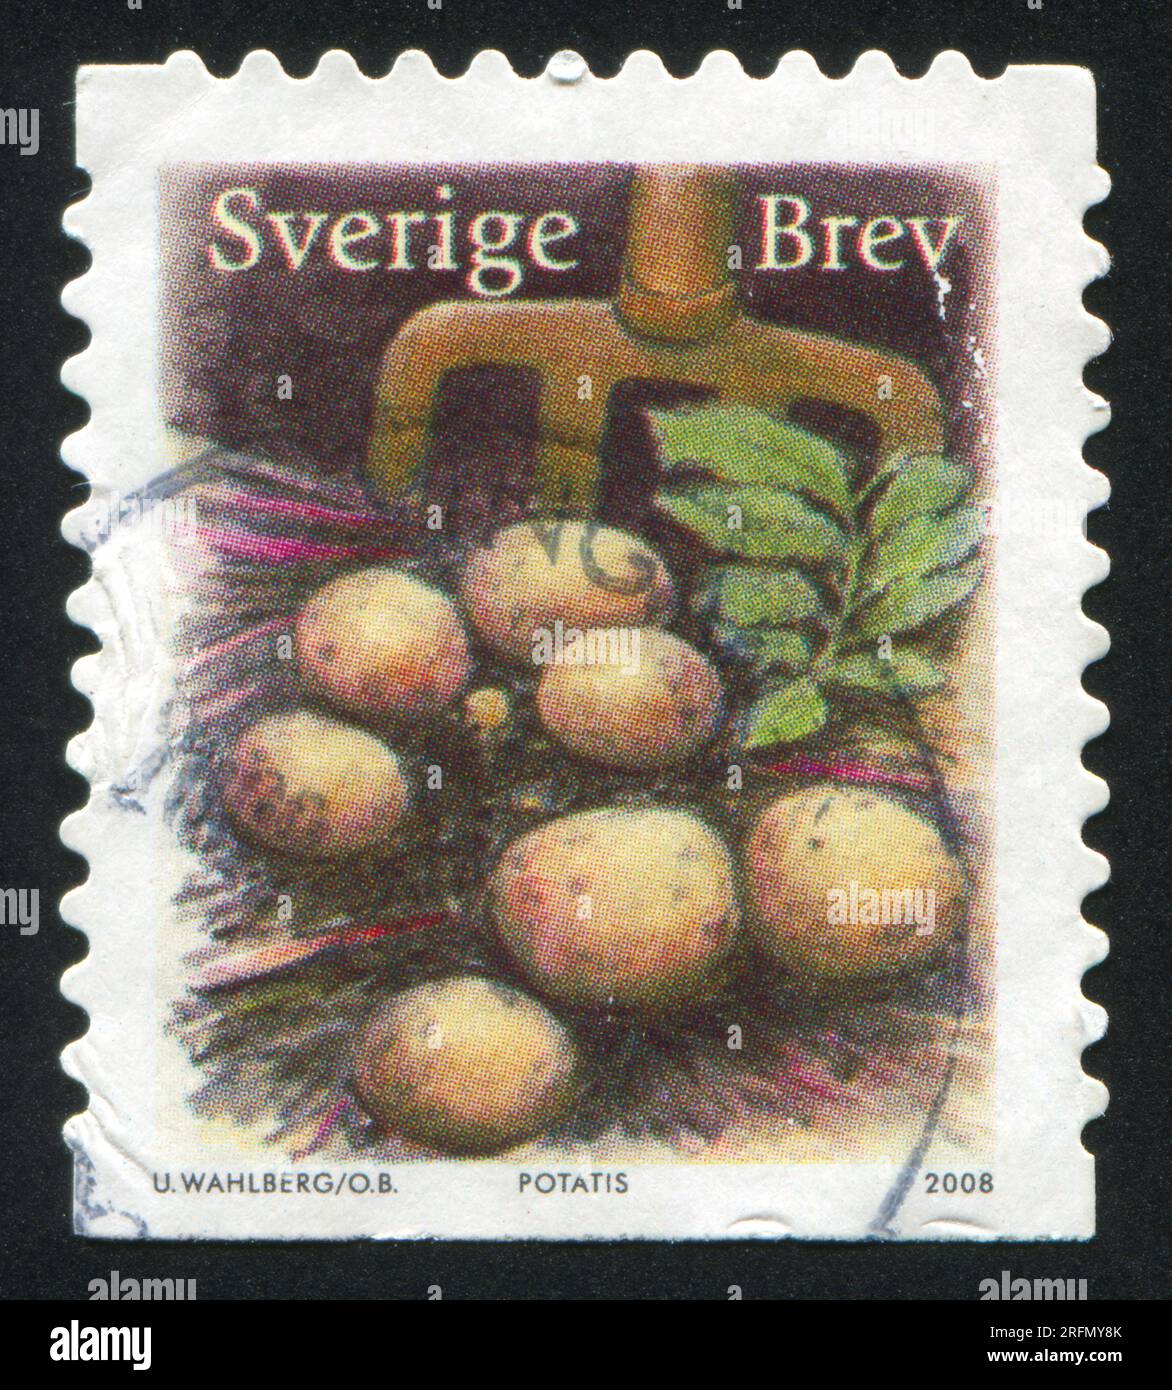 SWEDEN - CIRCA 2008: stamp printed by Sweden, shows Potato, circa 2008 Stock Photo